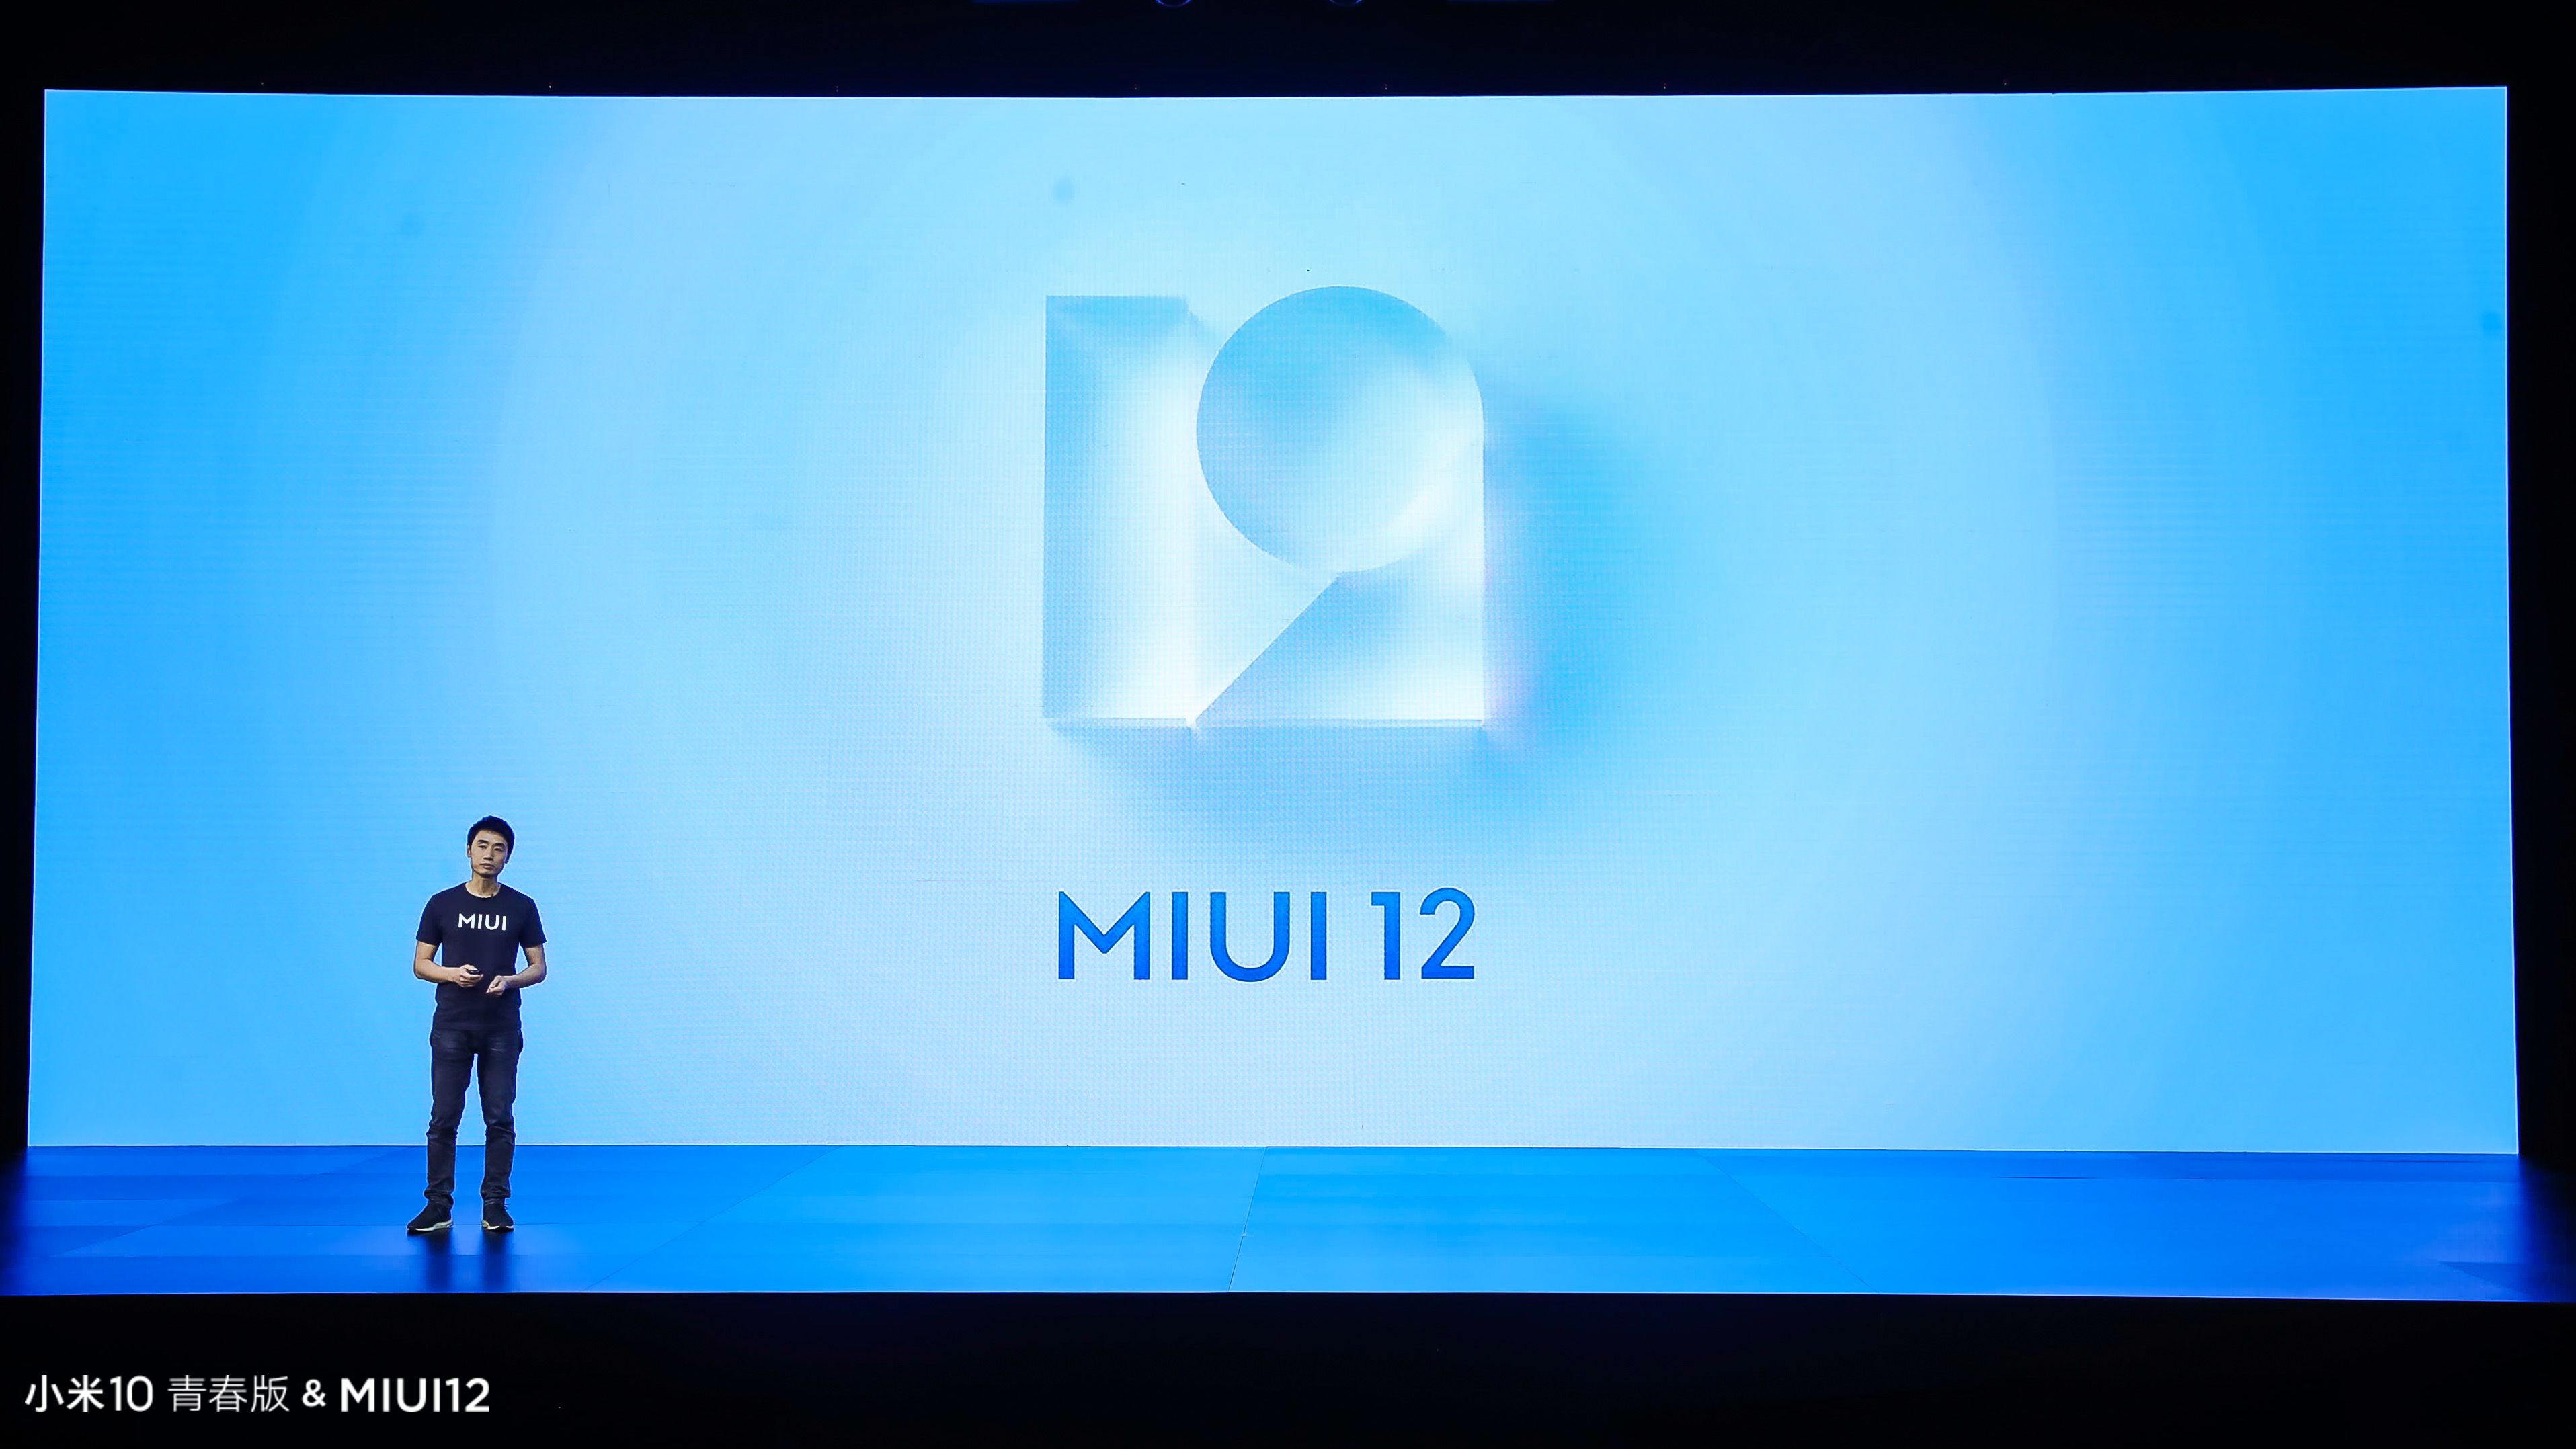 小米MIUI12系统软件宣布公布，增加四大新特点：稳定版六月消息推送